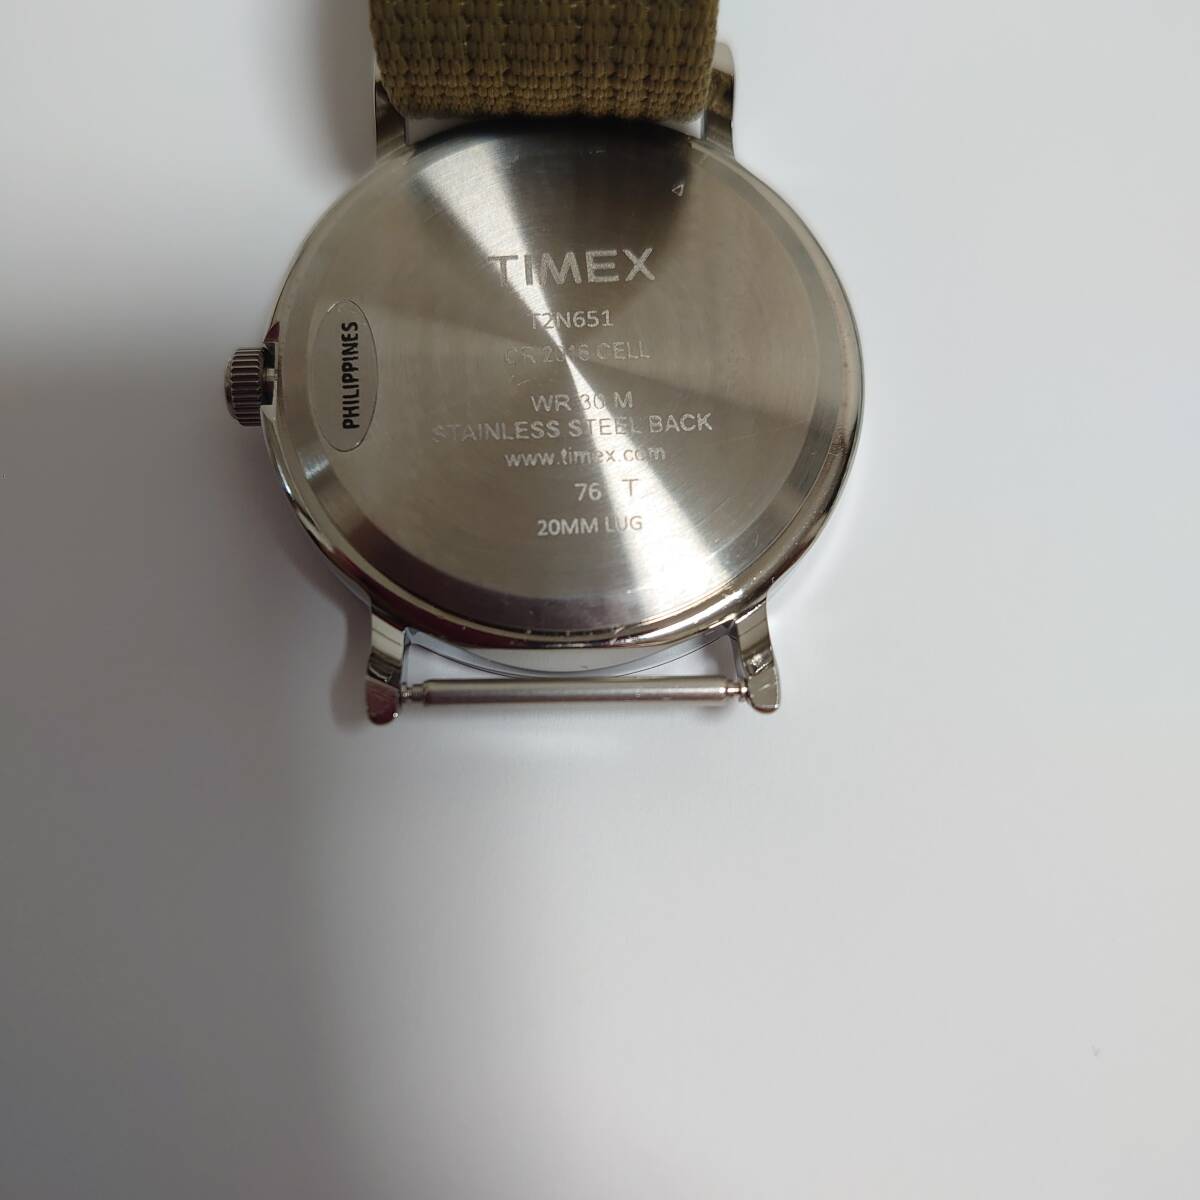 [ почти не использовался ] Timex we kenda- central park зеленый TIMEX наручные часы защитная плёнка есть без коробки рабочее состояние подтверждено USED стандартный товар 